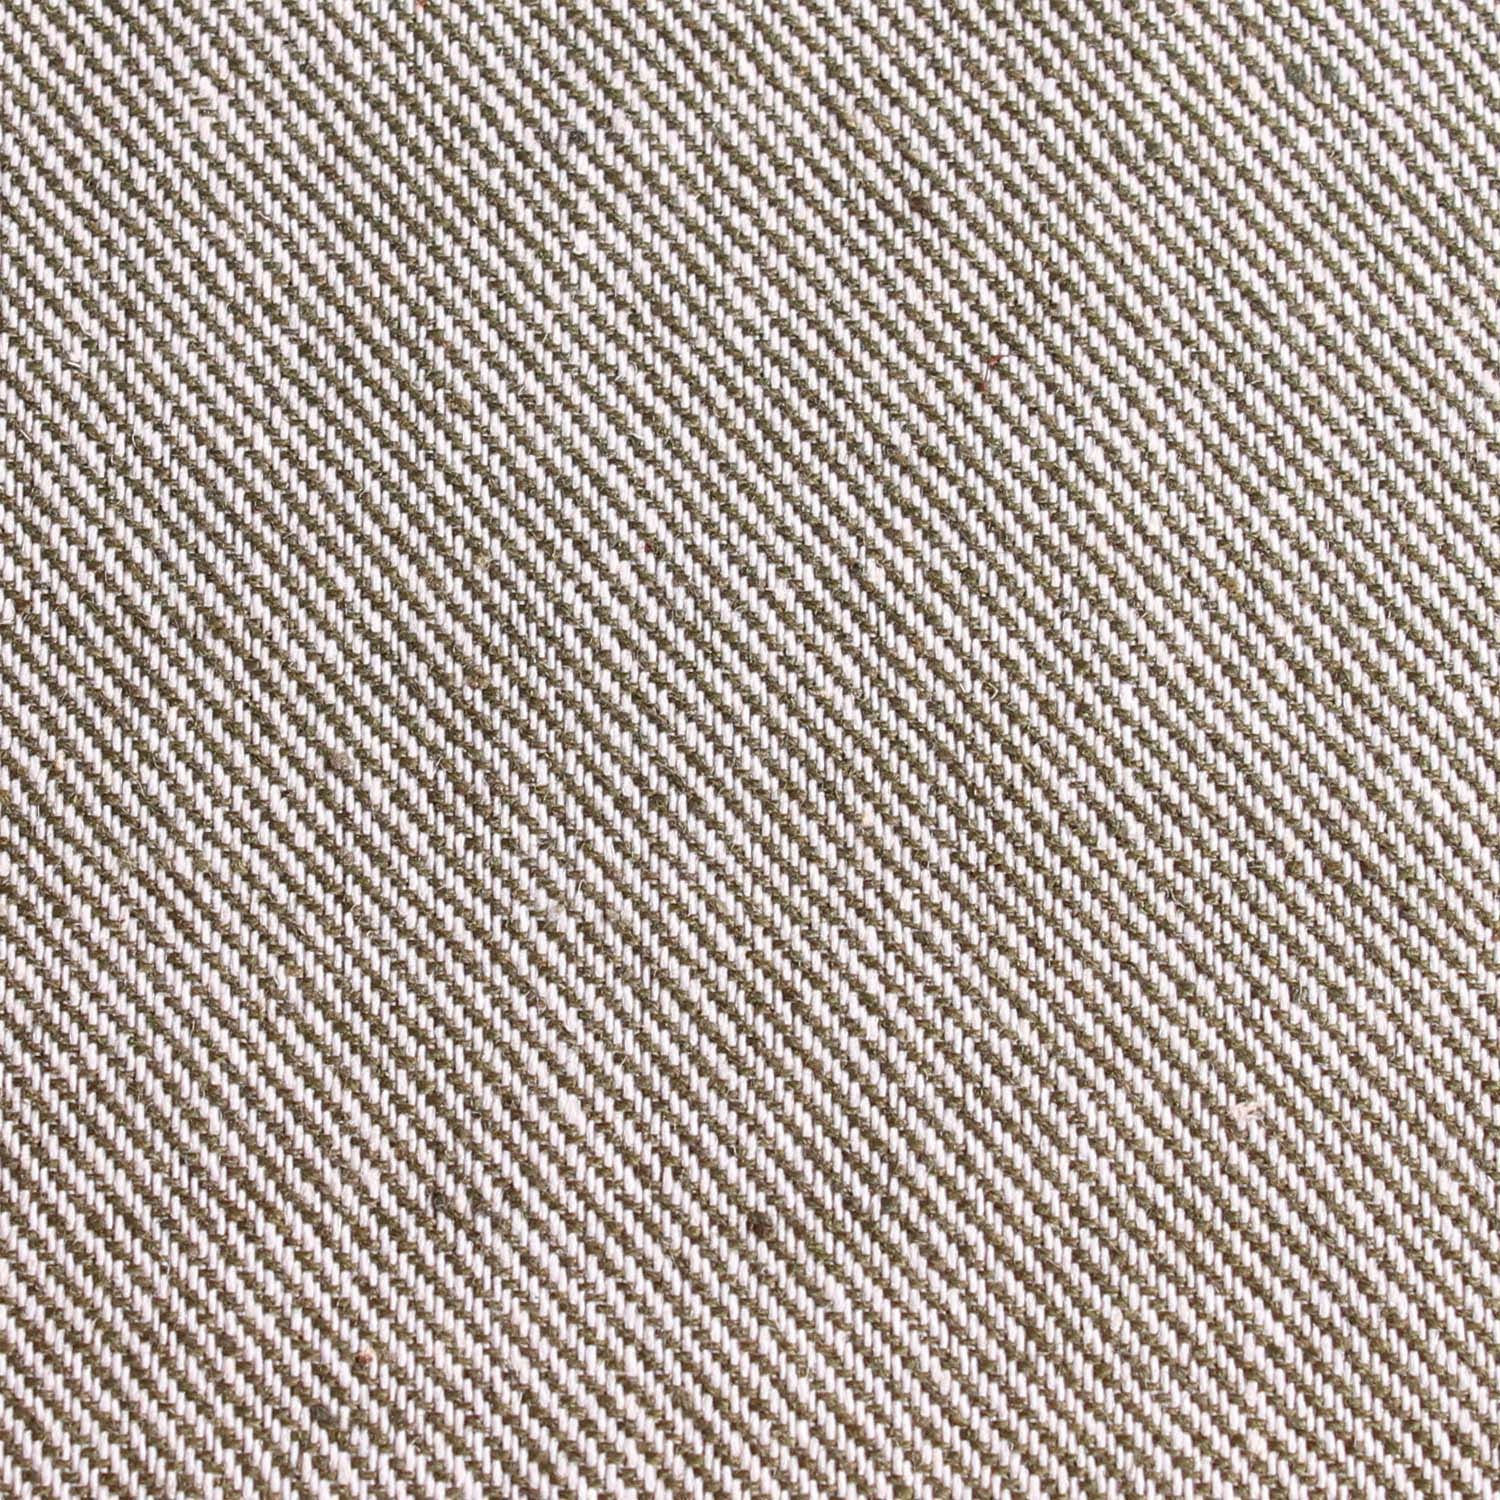 Green & White Twill Stripe Linen Fabric Pocket Square L186